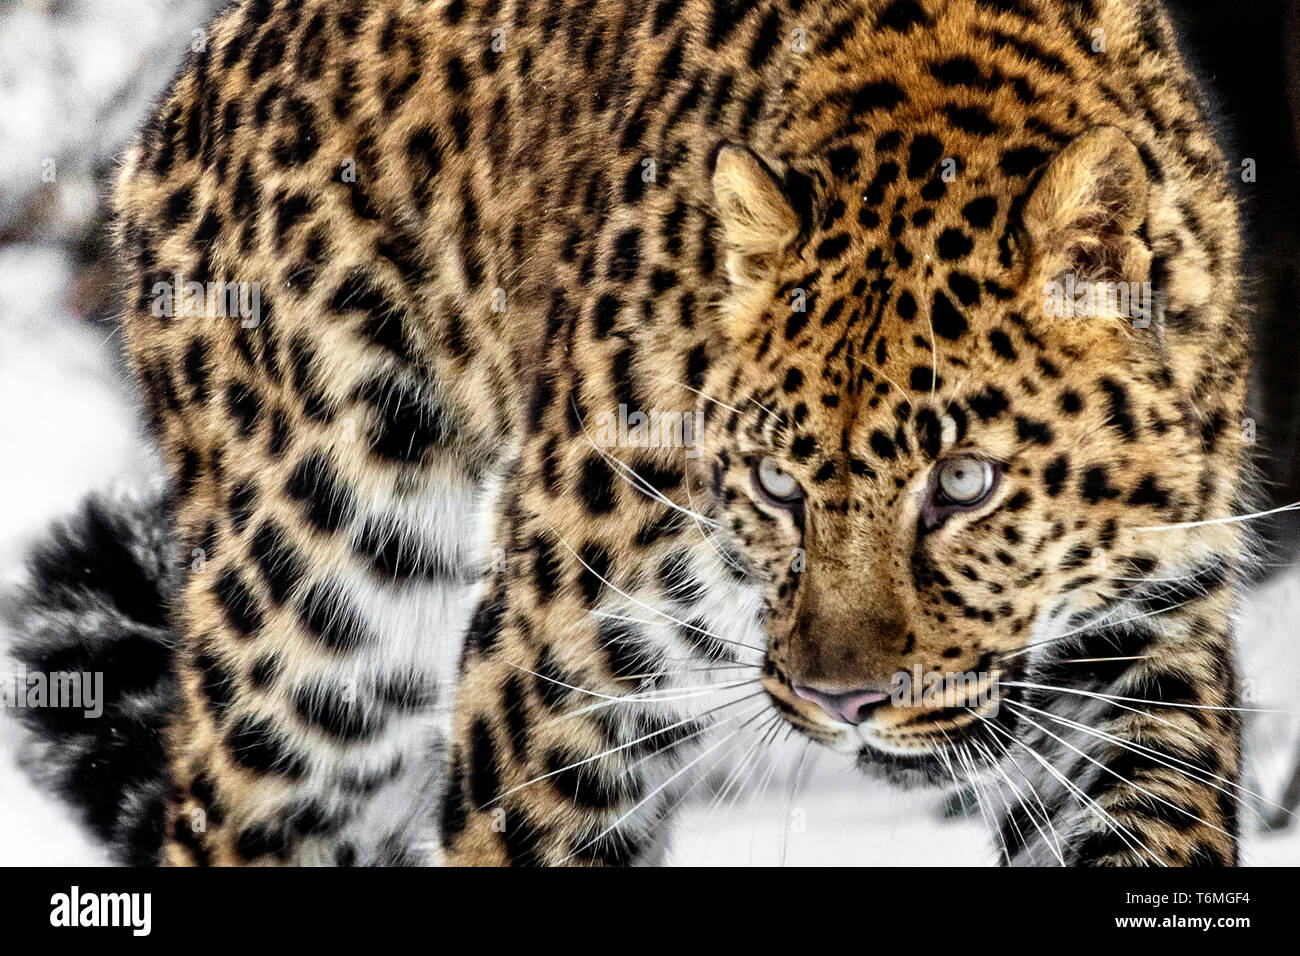 La panthère est une sous-espèce de léopard le sud-est de la Russie et nord-est de la Chine. C'est gravement menacée depuis 1996. Banque D'Images